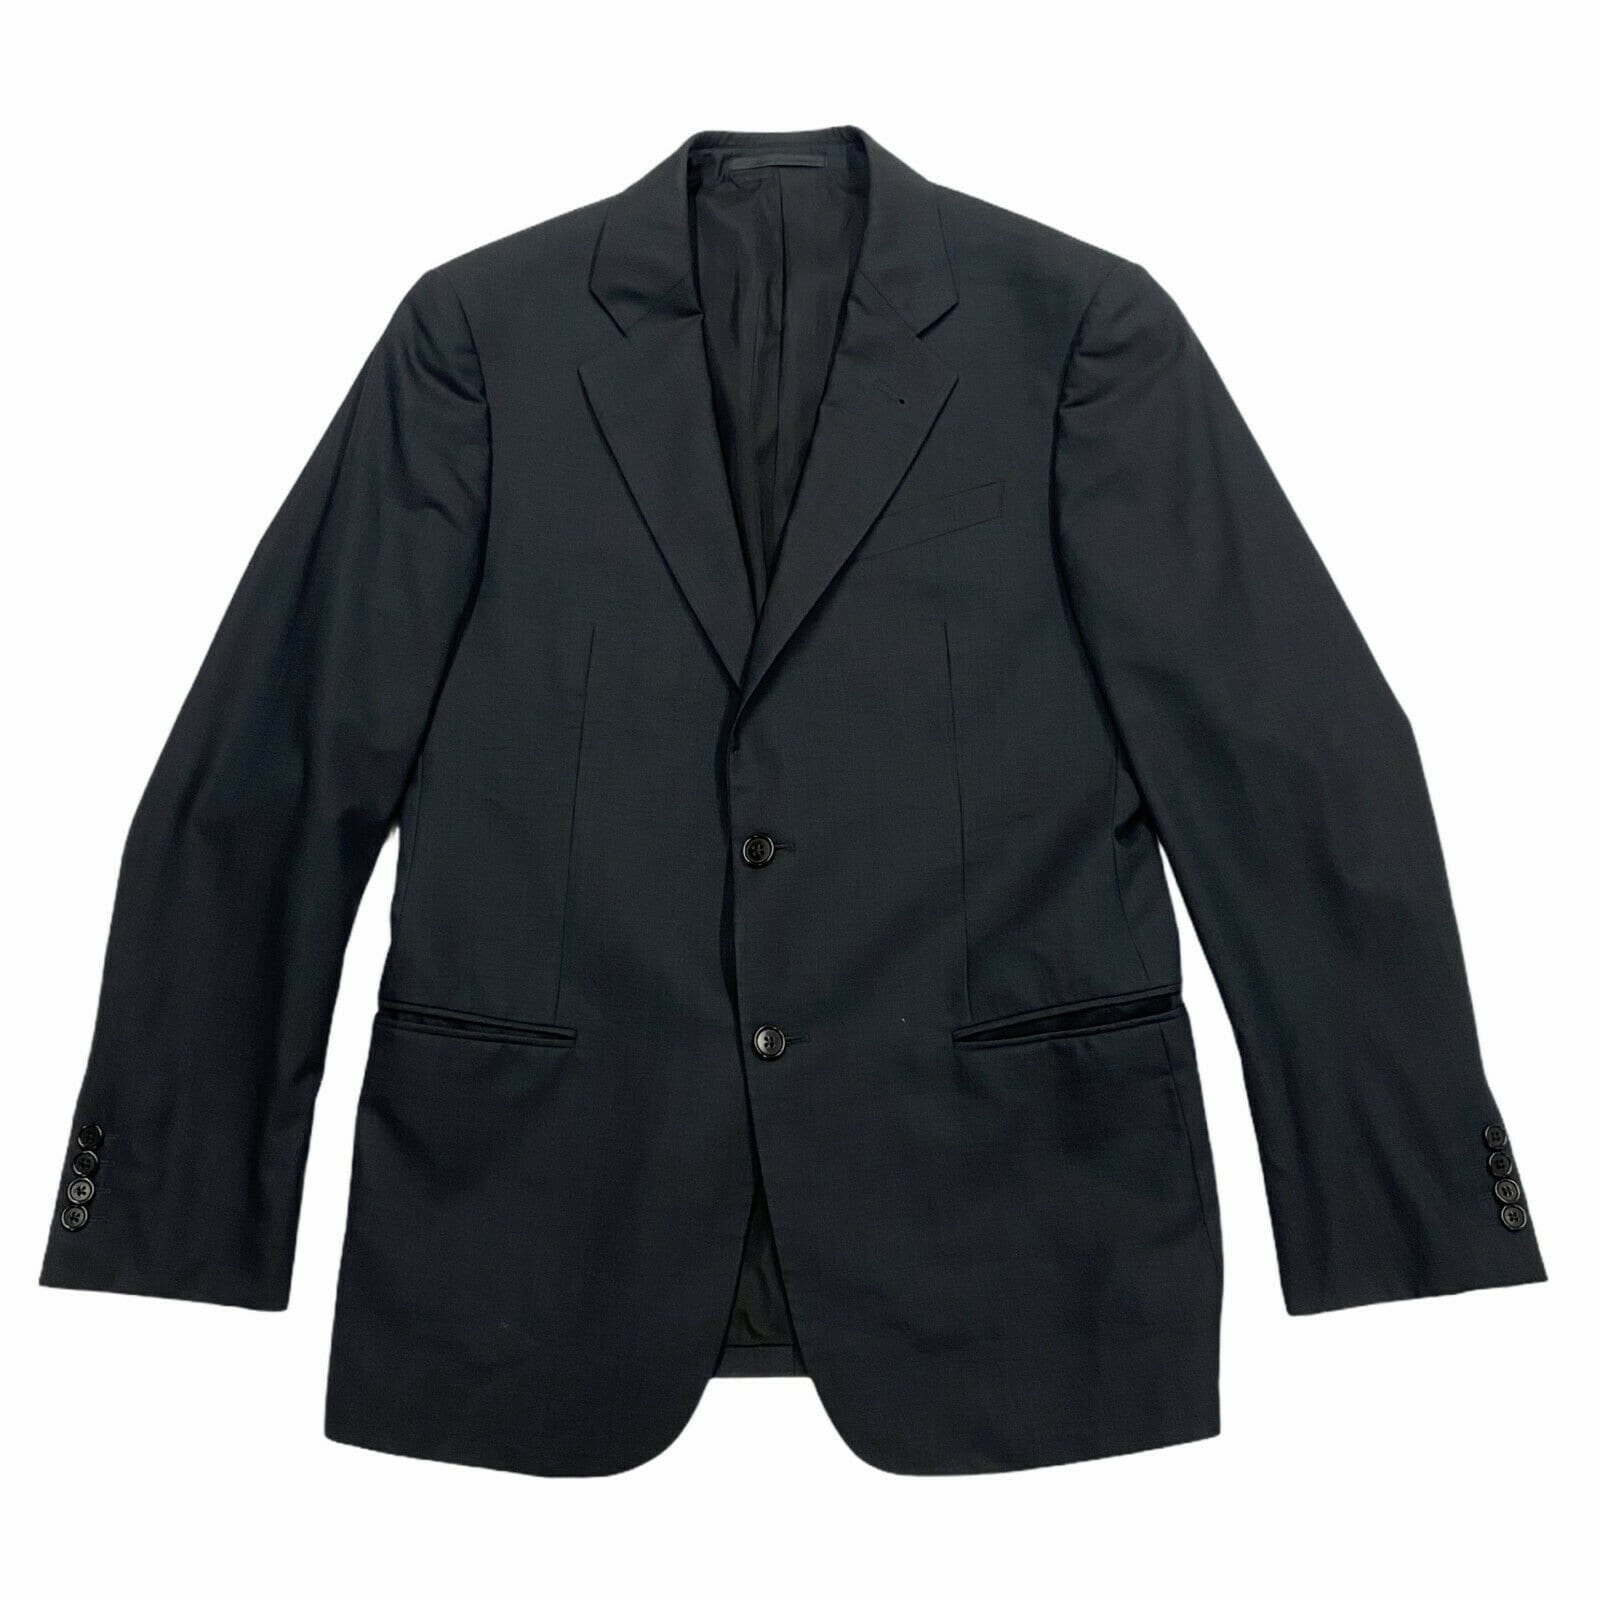 Armani Collezioni Blazer Jacket Vintage High End Designer Black Suit ...